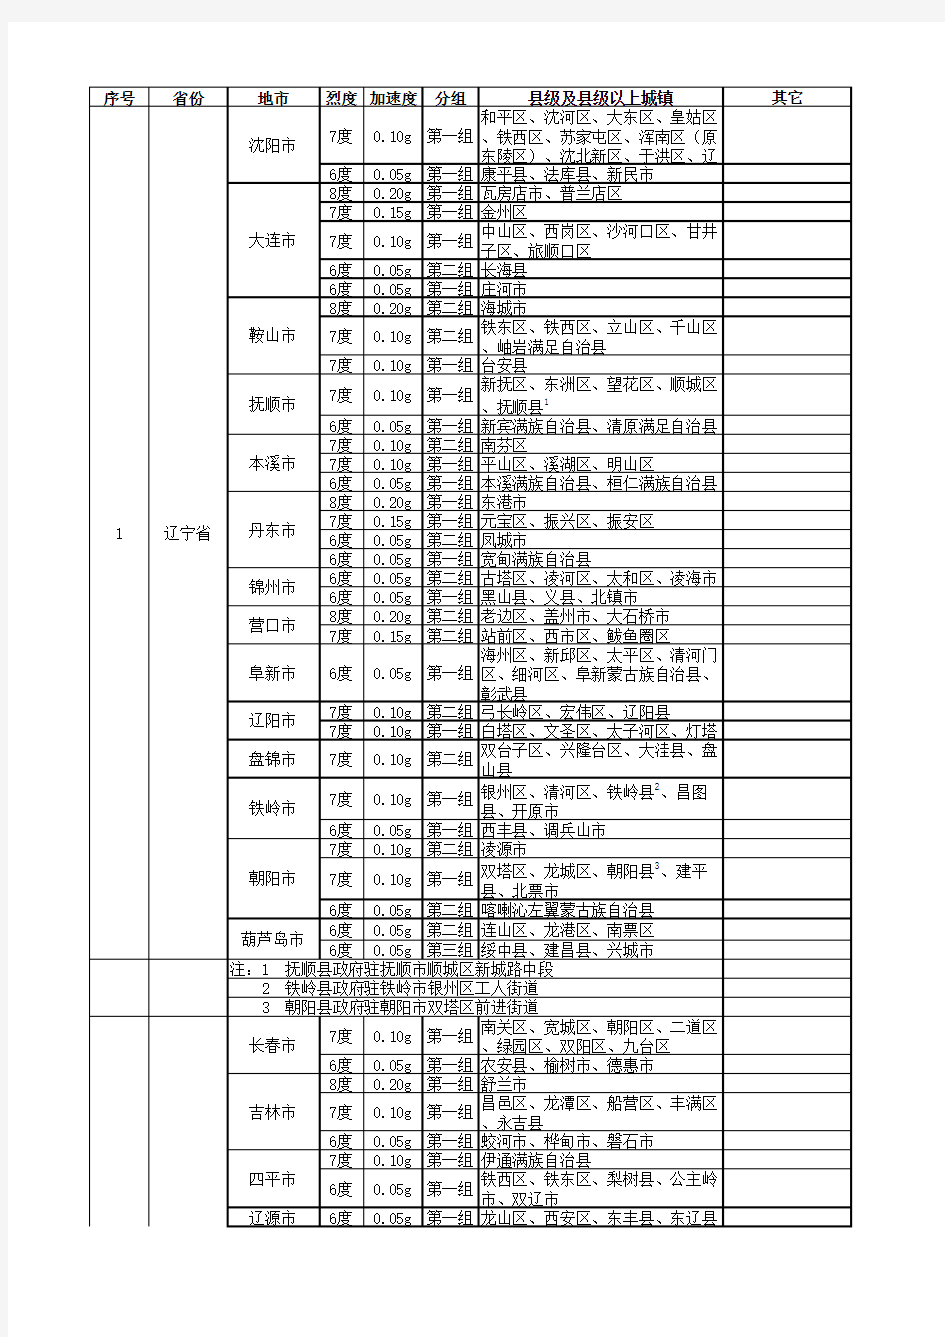 附录2.东北三省抗震设防烈度表(2016年版)(1)